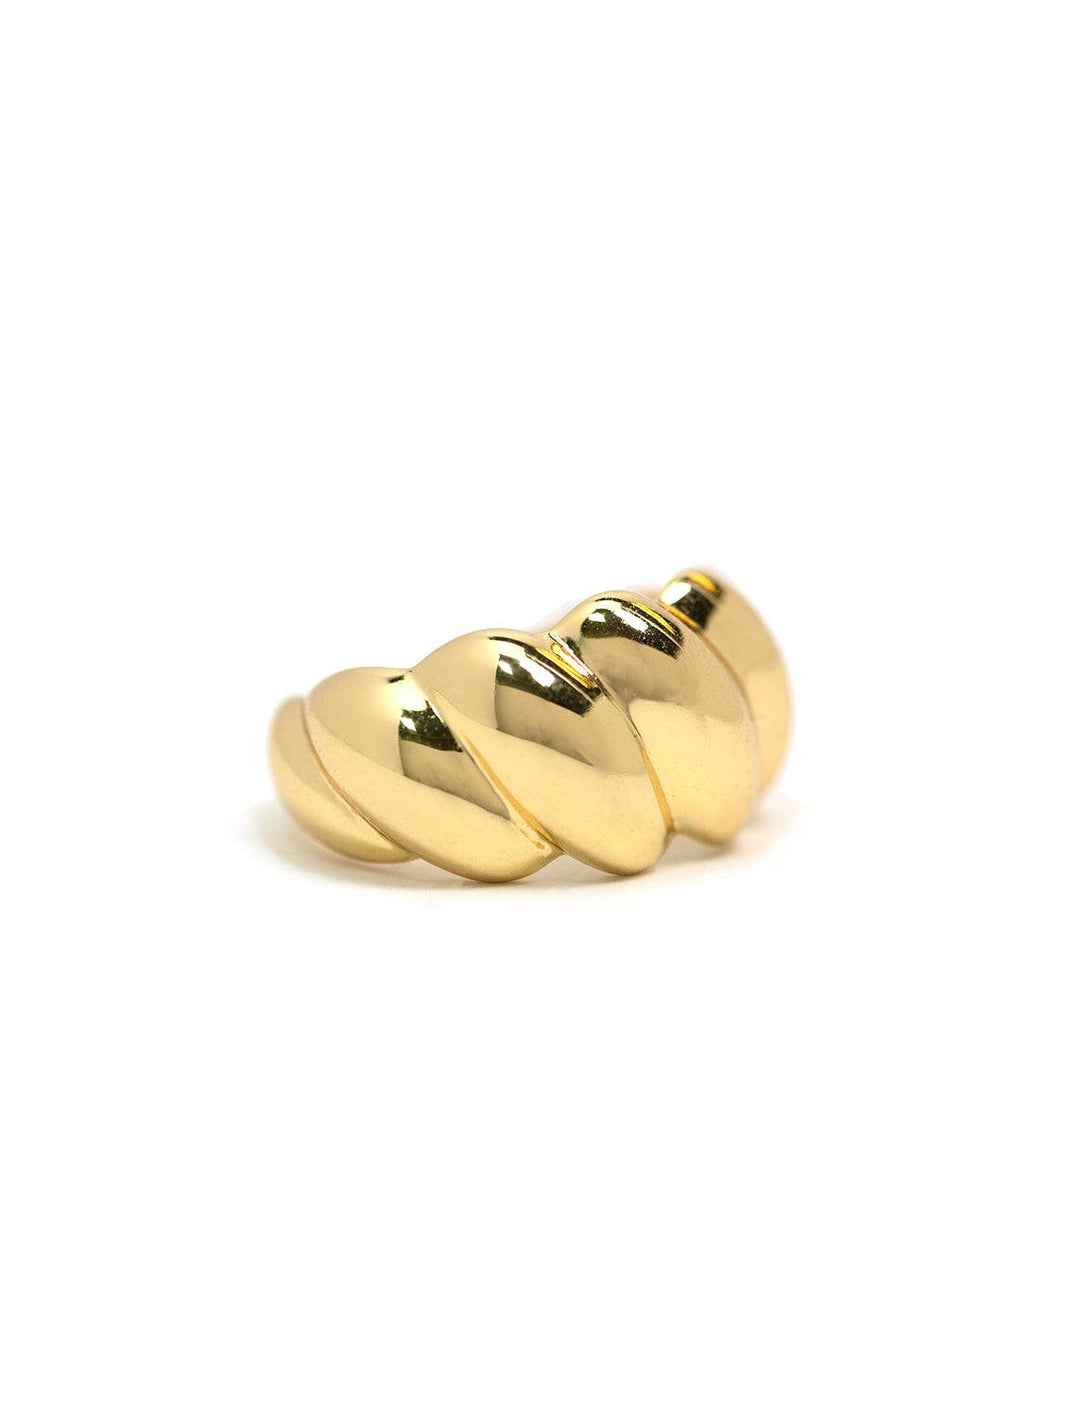 Jonesy Wood estelle ring in gold - Twigs